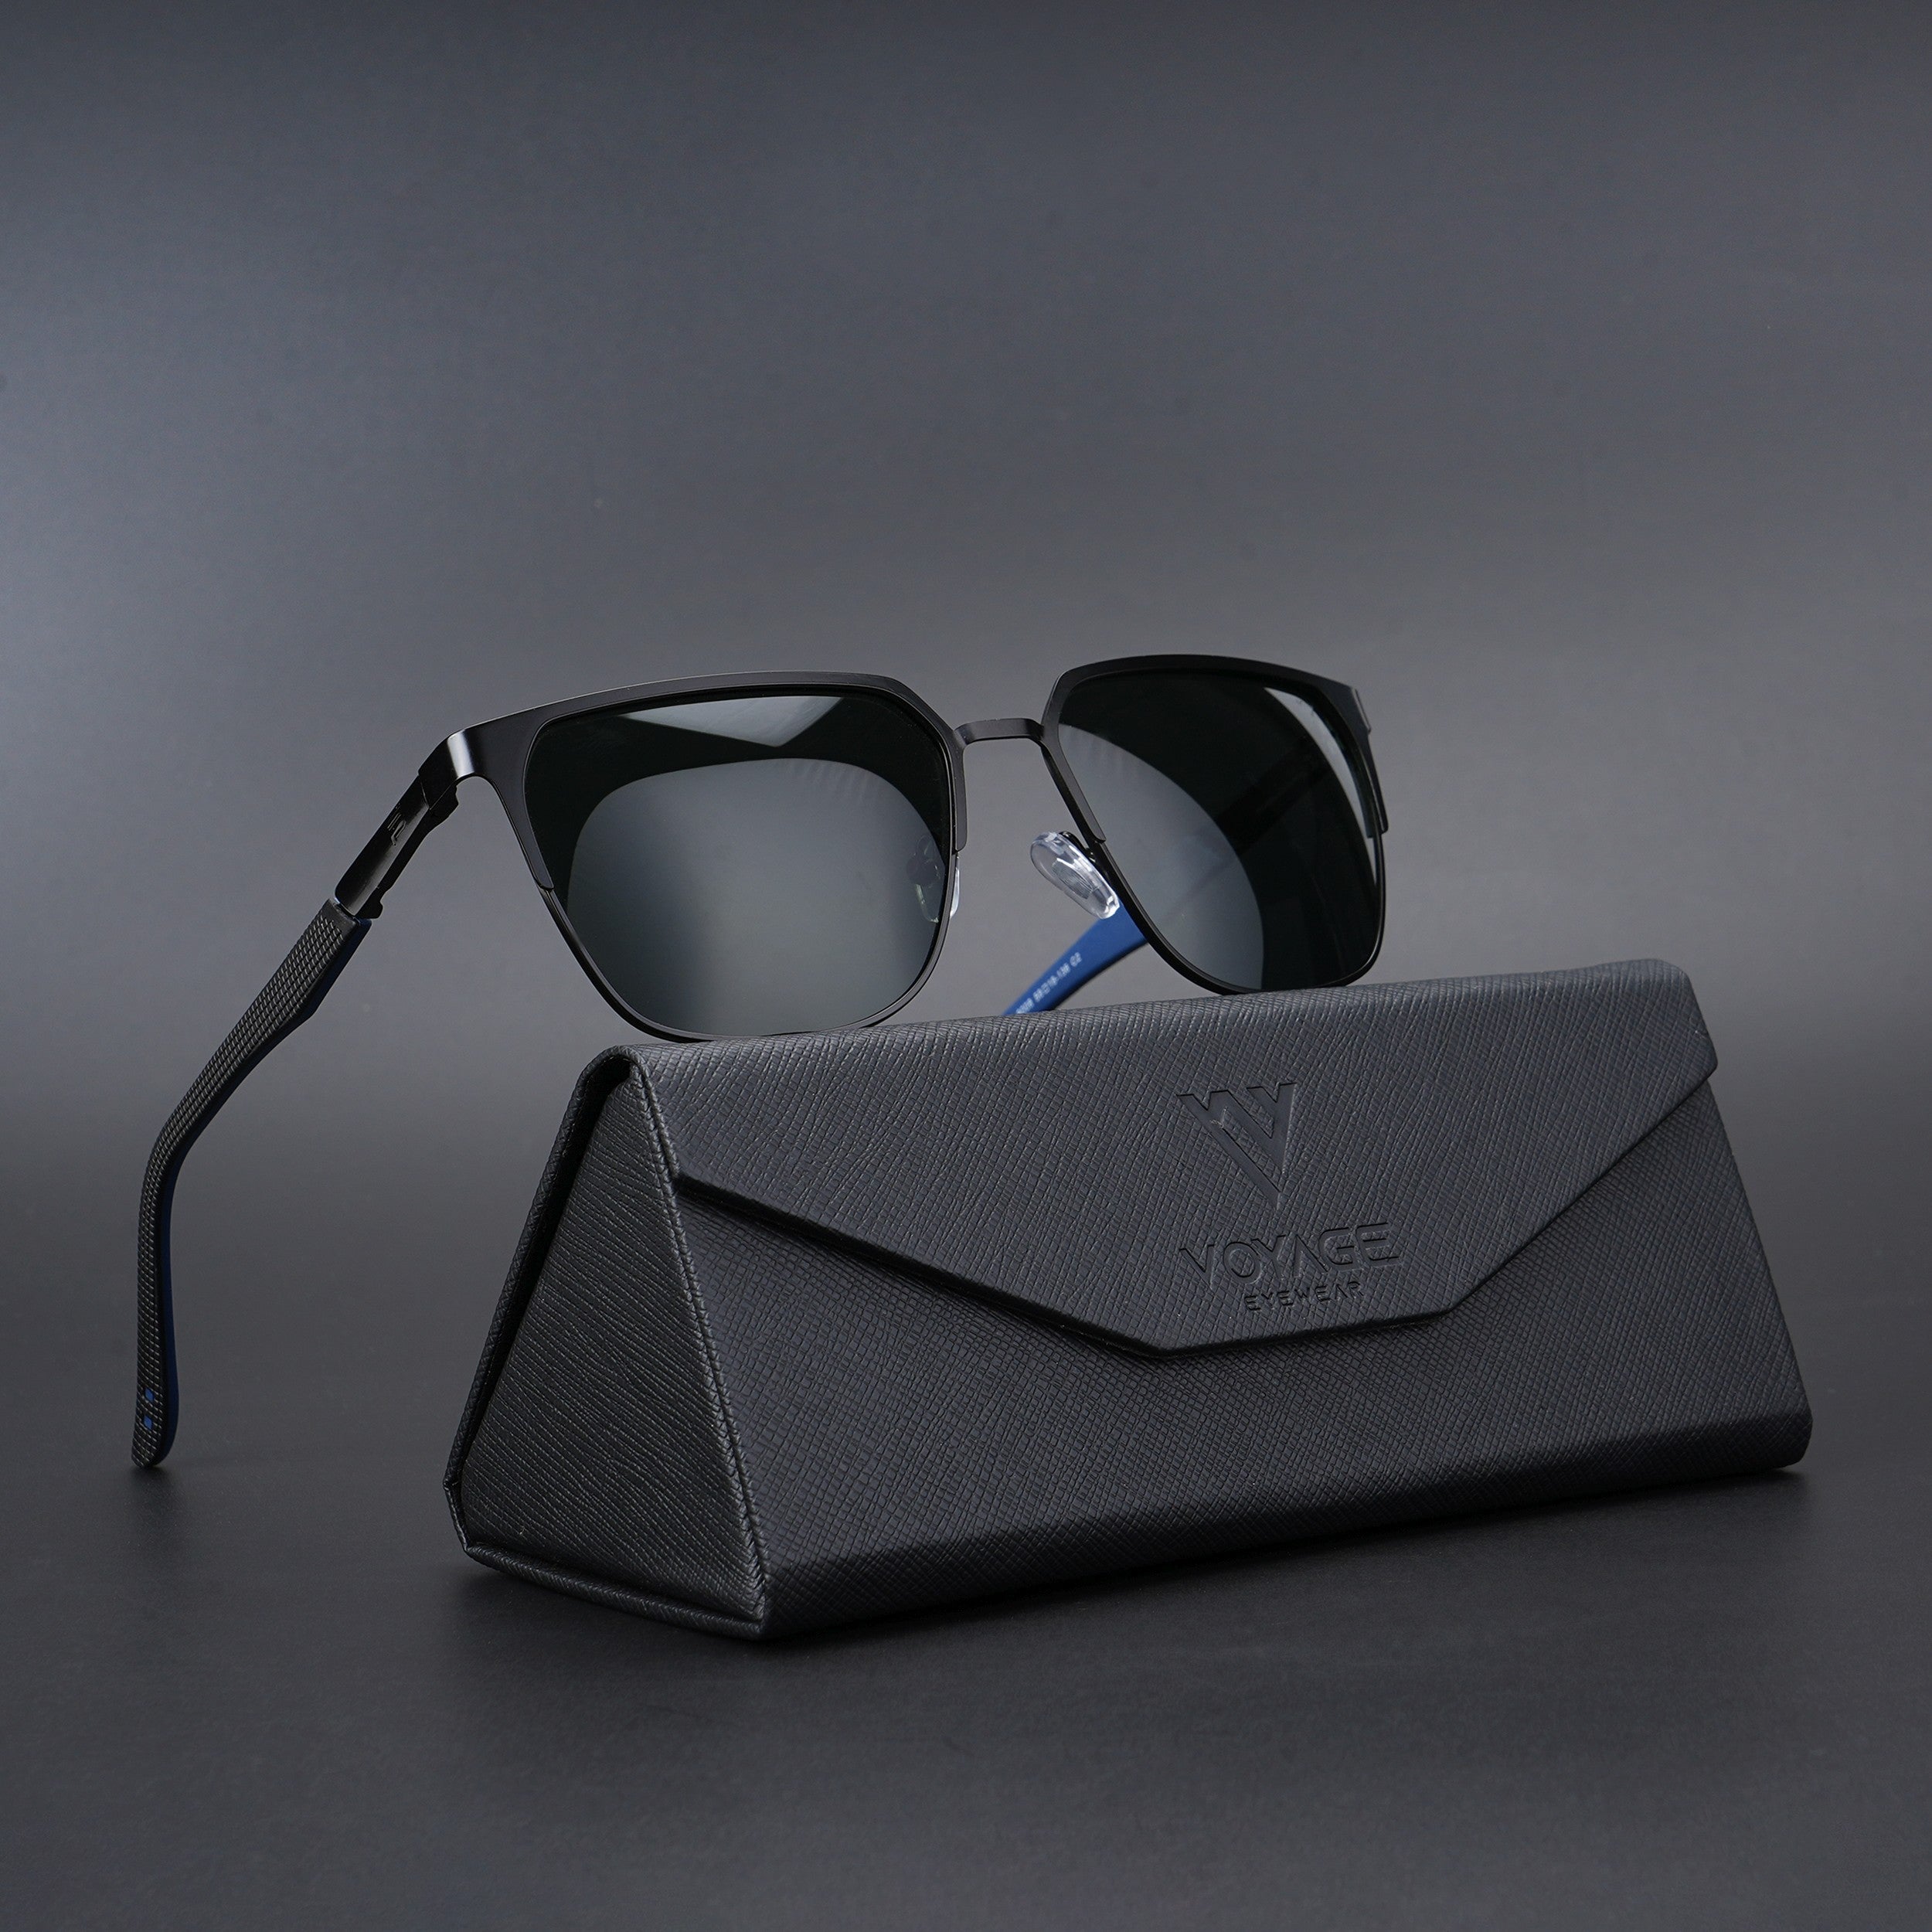 Voyage Square Polarized Sunglasses for Men & Women (Green Lens | Black Frame - PMG5609)